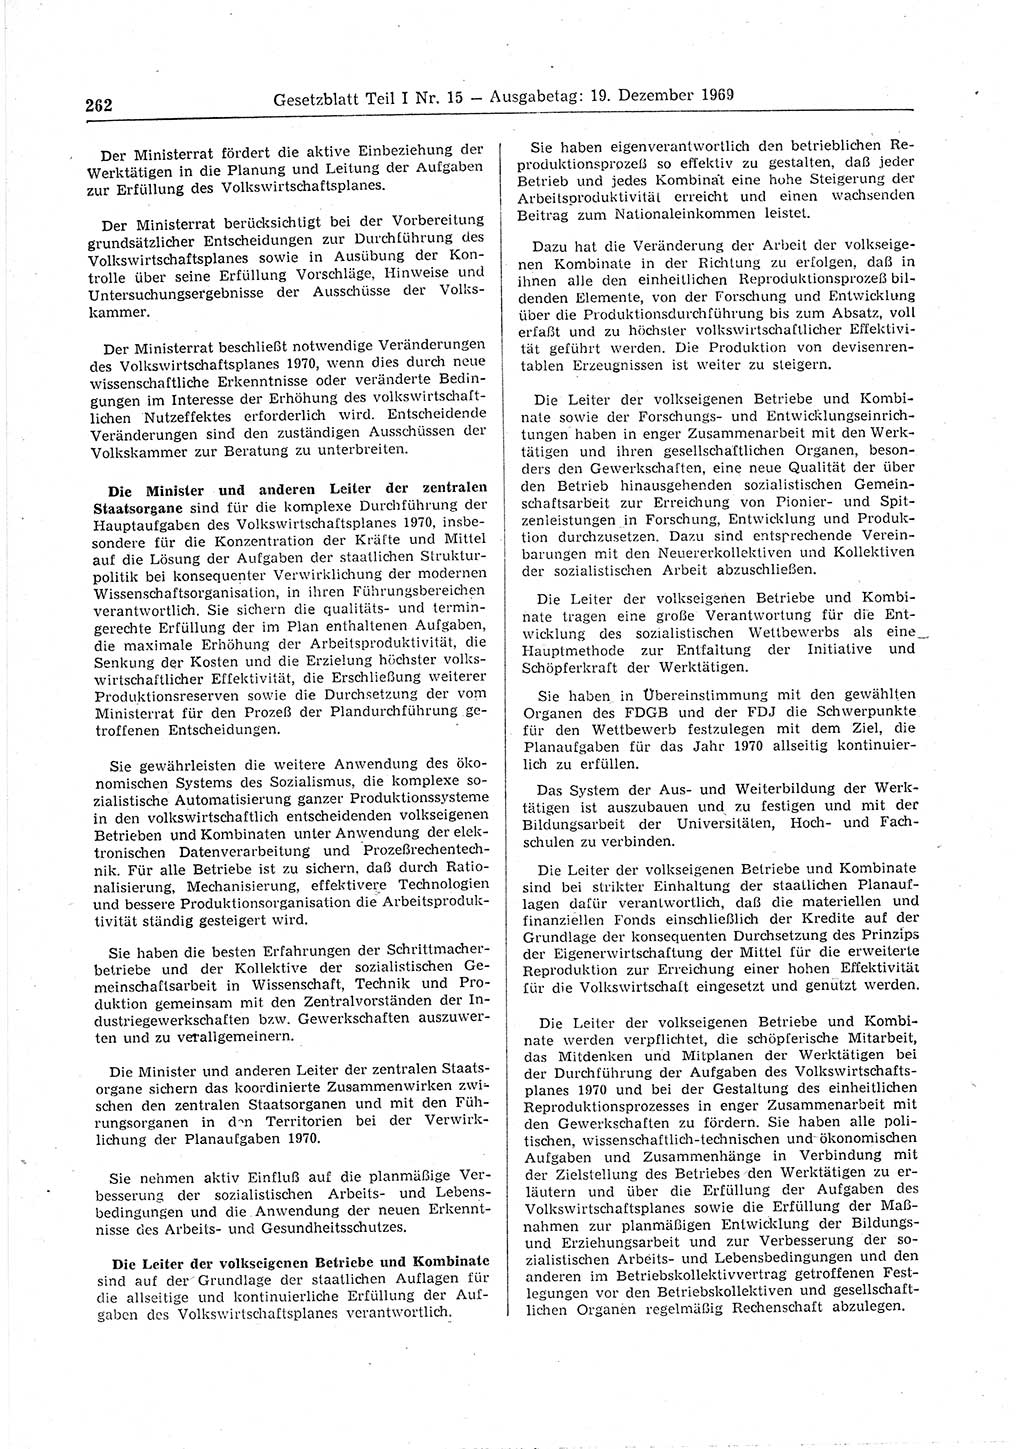 Gesetzblatt (GBl.) der Deutschen Demokratischen Republik (DDR) Teil Ⅰ 1969, Seite 262 (GBl. DDR Ⅰ 1969, S. 262)